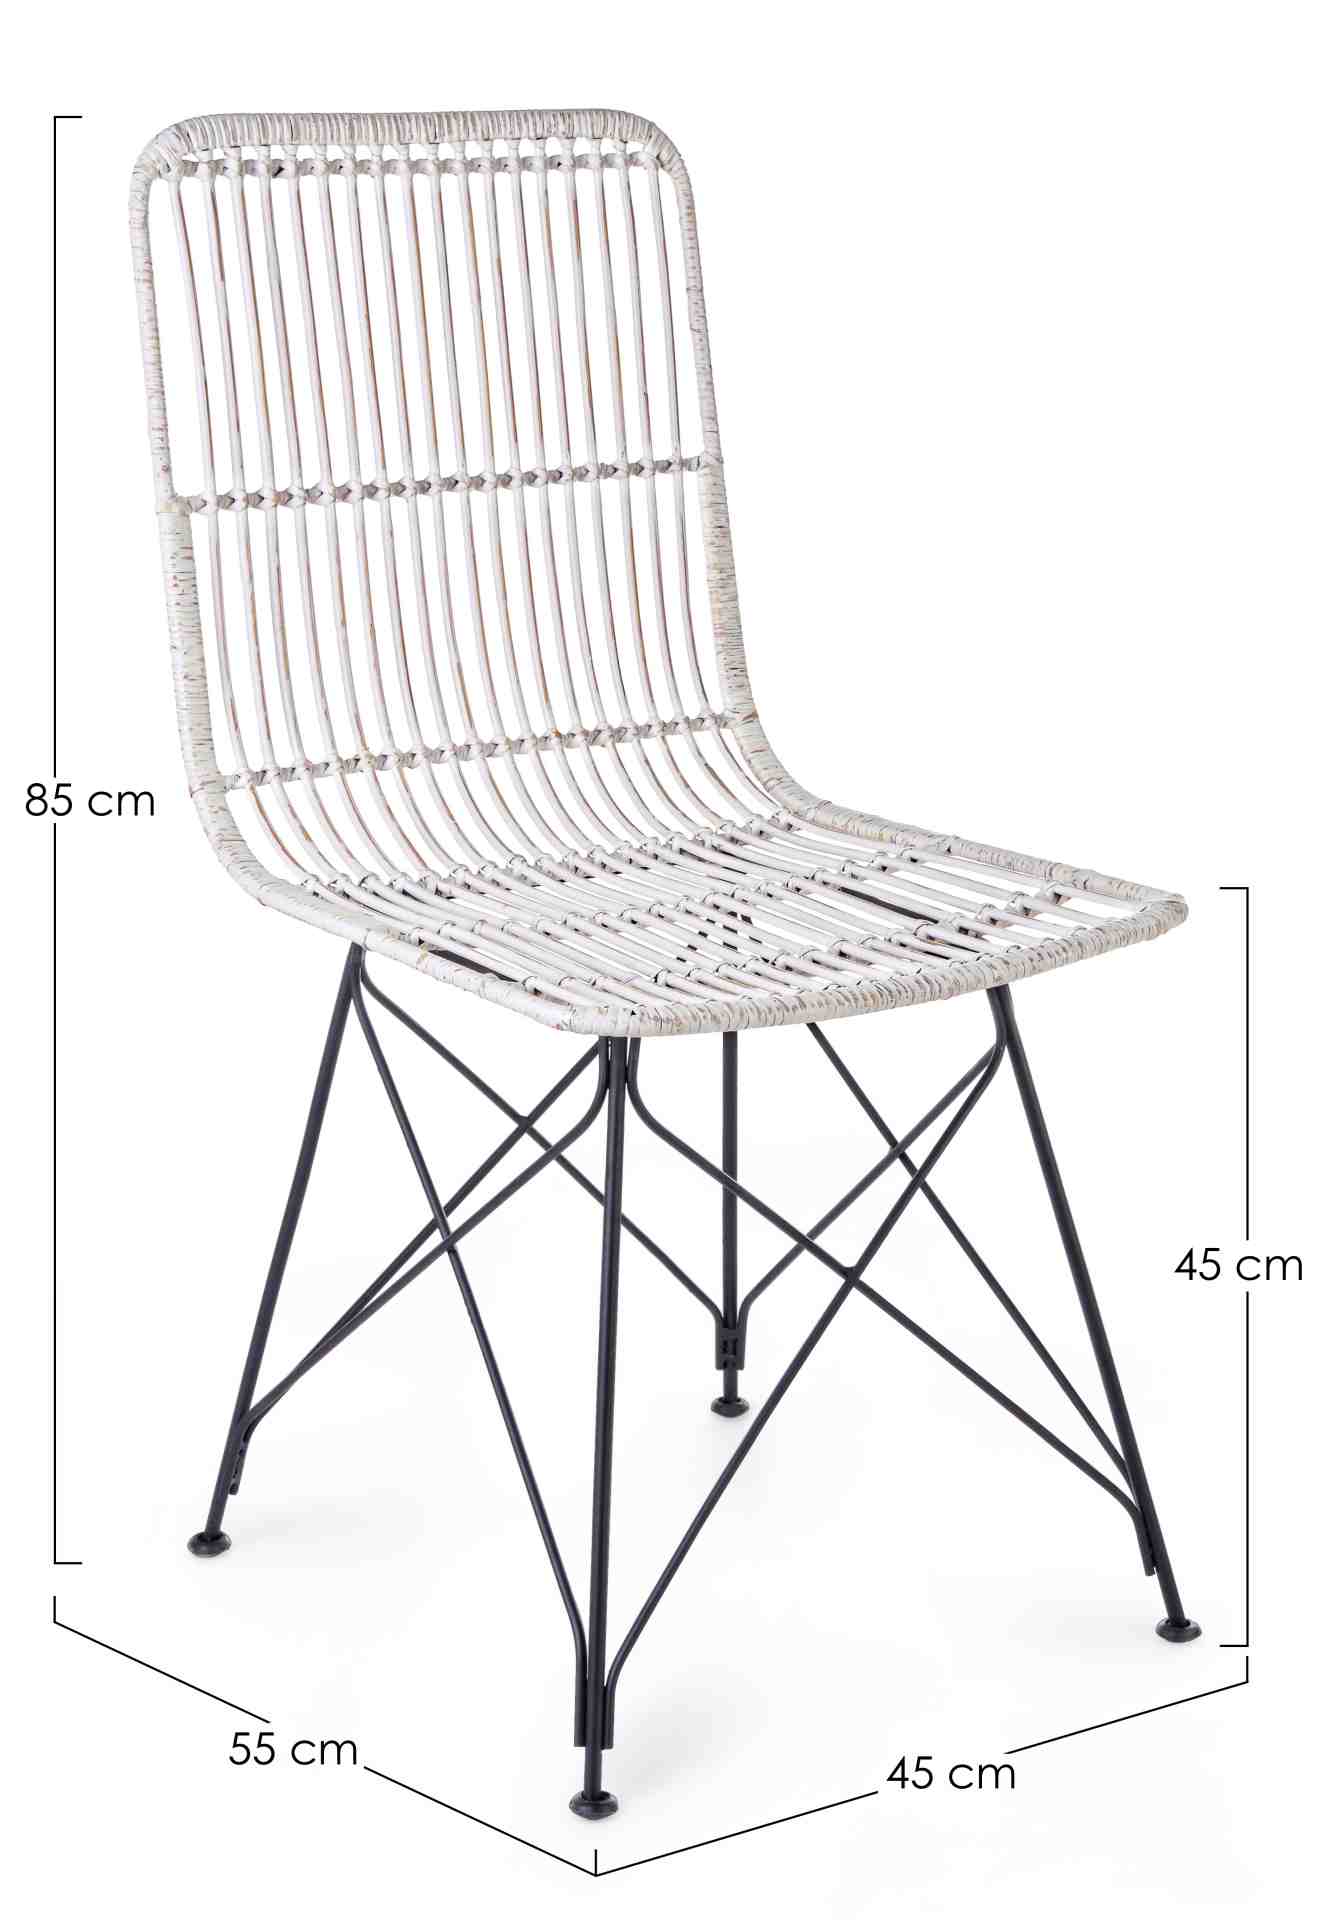 Der Stuhl Lucila Kabu überzeugt mit seinem modernem Design.Gefertigt wurde der Stuhl aus einem Kabugeflecht, welches einen weißen Farbton besitzt. Das Gestell ist aus Metall und hat eine Schwarze Farbe. Die Sitzhöhe beträgt 45 cm.